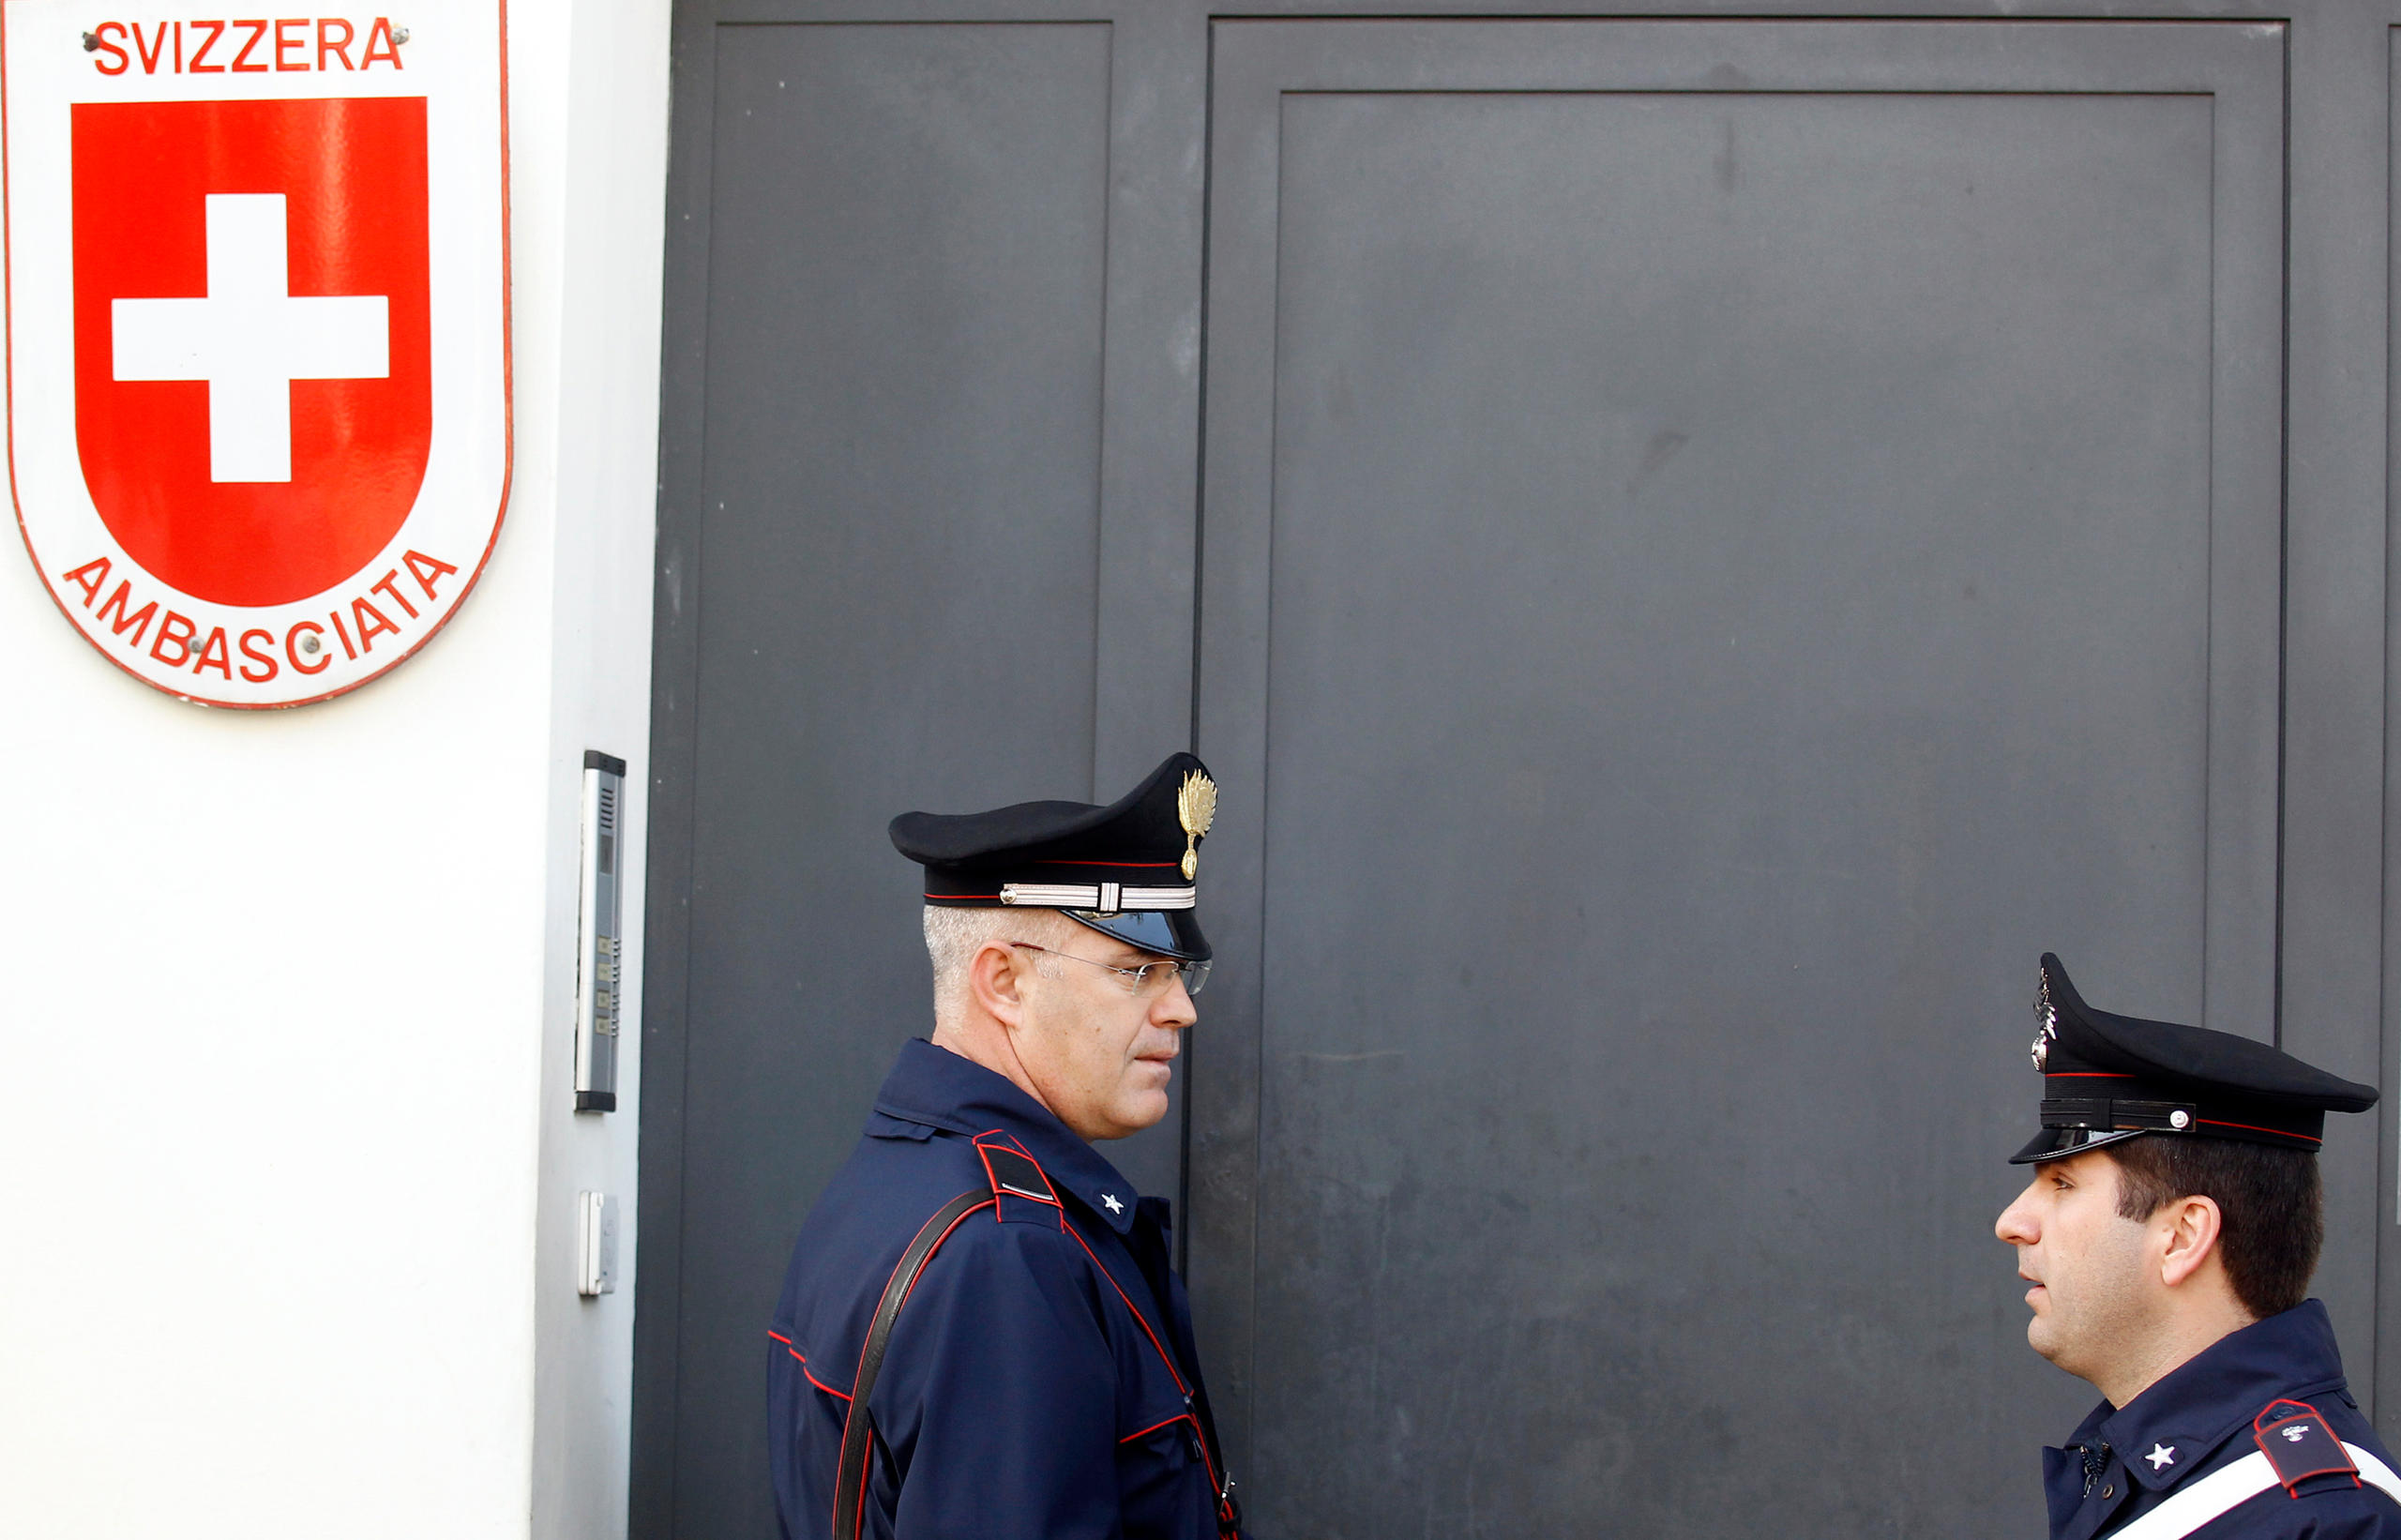 Deux policiers italiens devant une ambassade suisse